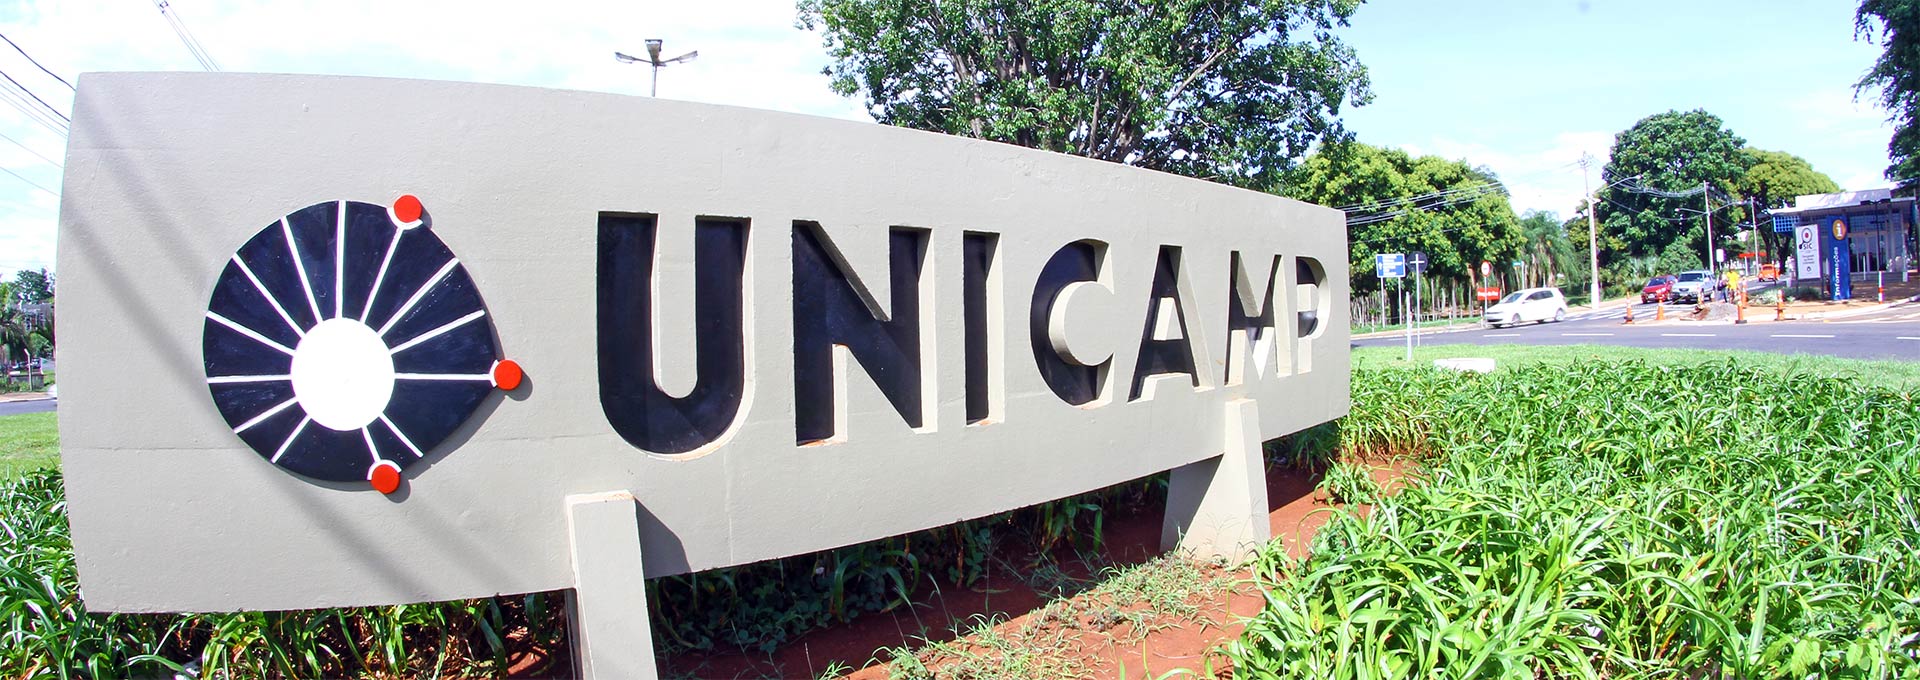 Placa da entrada principal da Unicamp